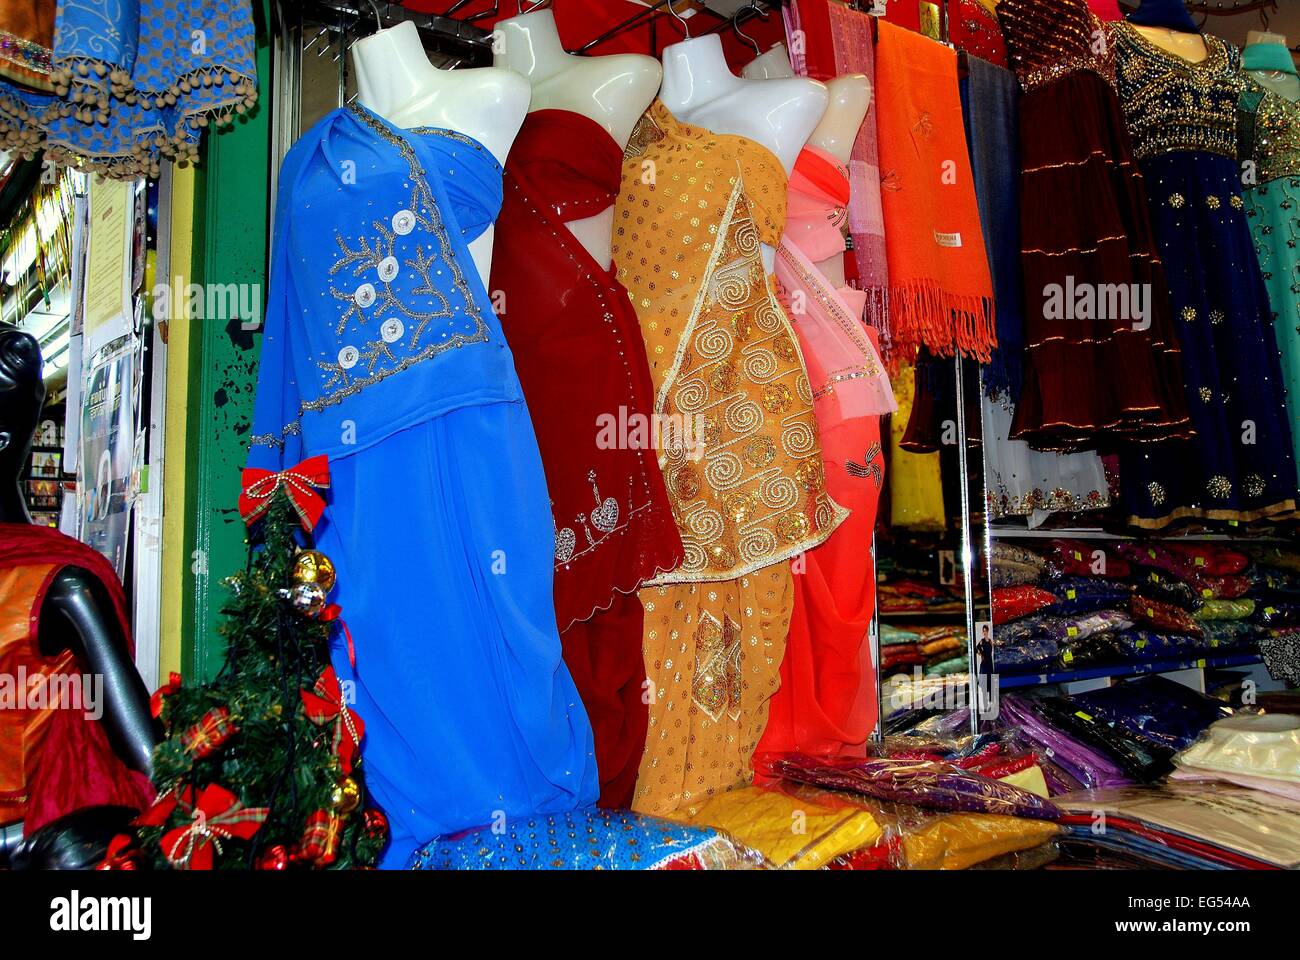 Singapur: tradicional india de ropa hecha de seda fina en la exhibición en una carretera de búfalo emporio de ropa en Little India Foto de stock